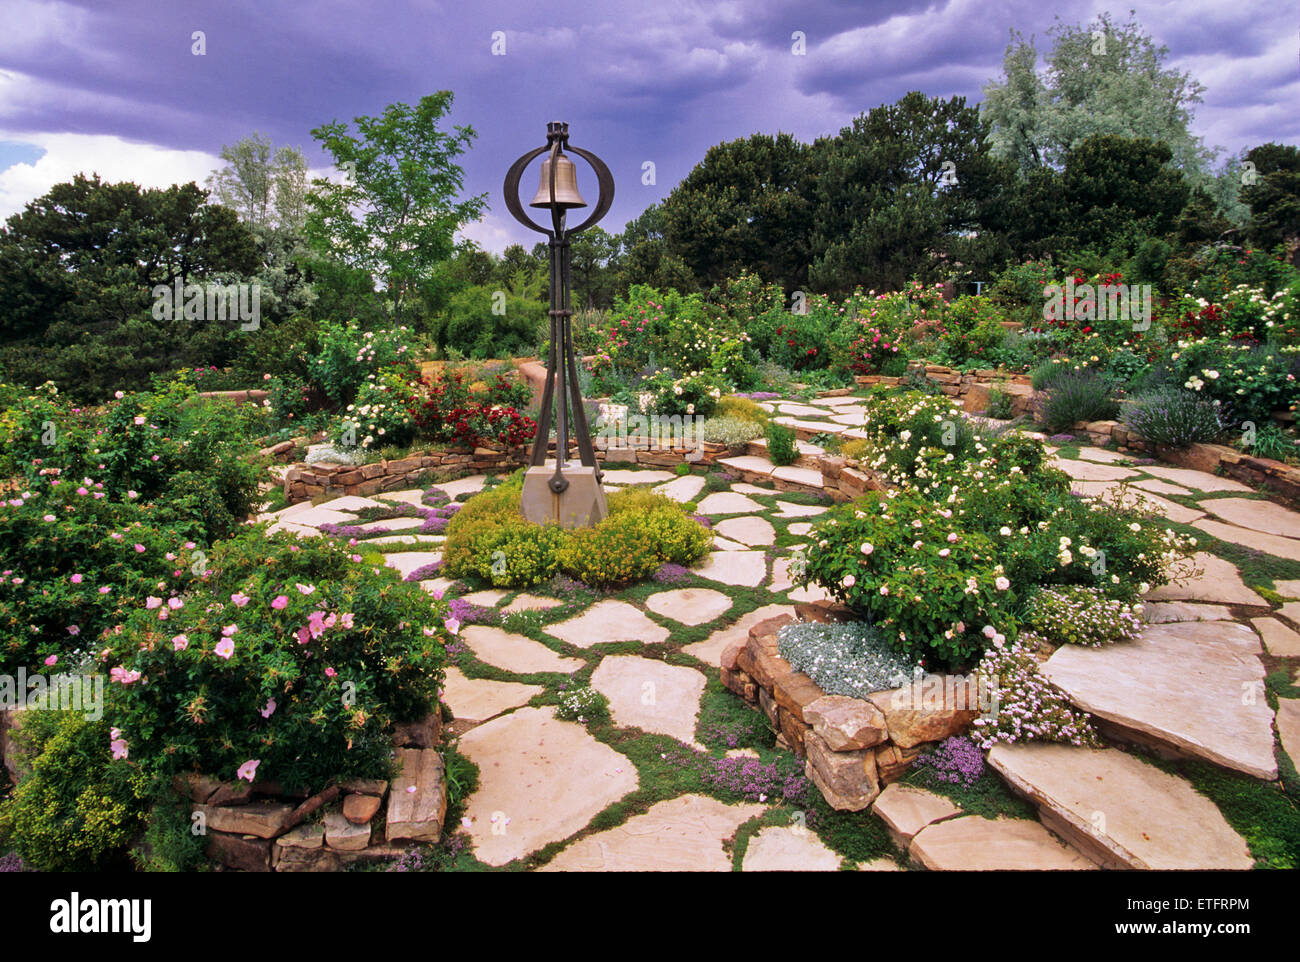 Los jardines de Santa Fe, Nuevo México, ofrecen un suministro constante de sorpresas encantadoras, ingeniosa y placeres. Foto de stock